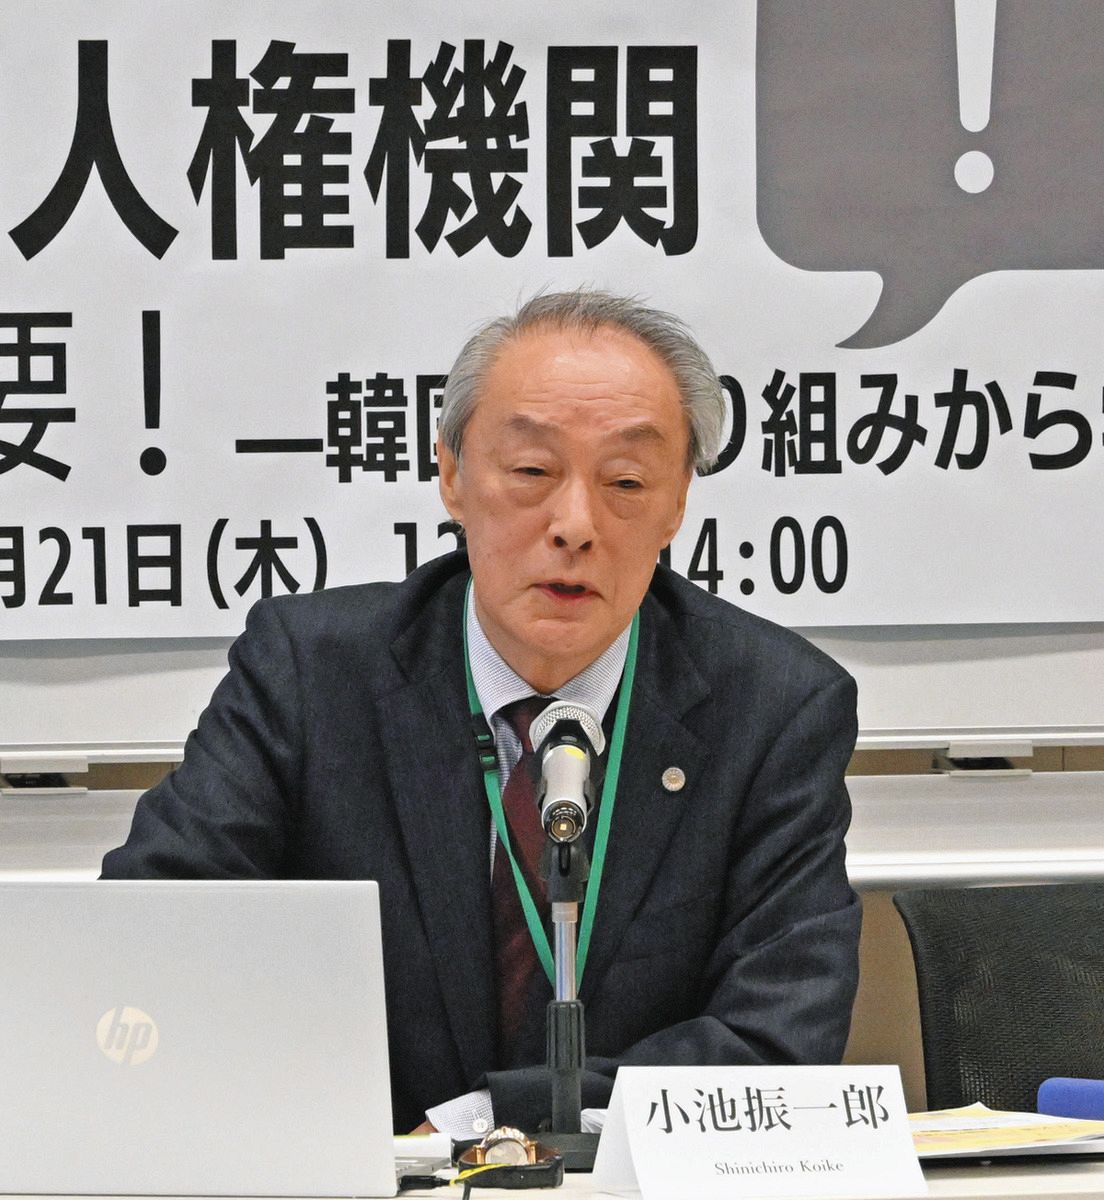 「日本にも国内人権機関が必要」と話す小池振一郎さん＝衆院第2議員会館で